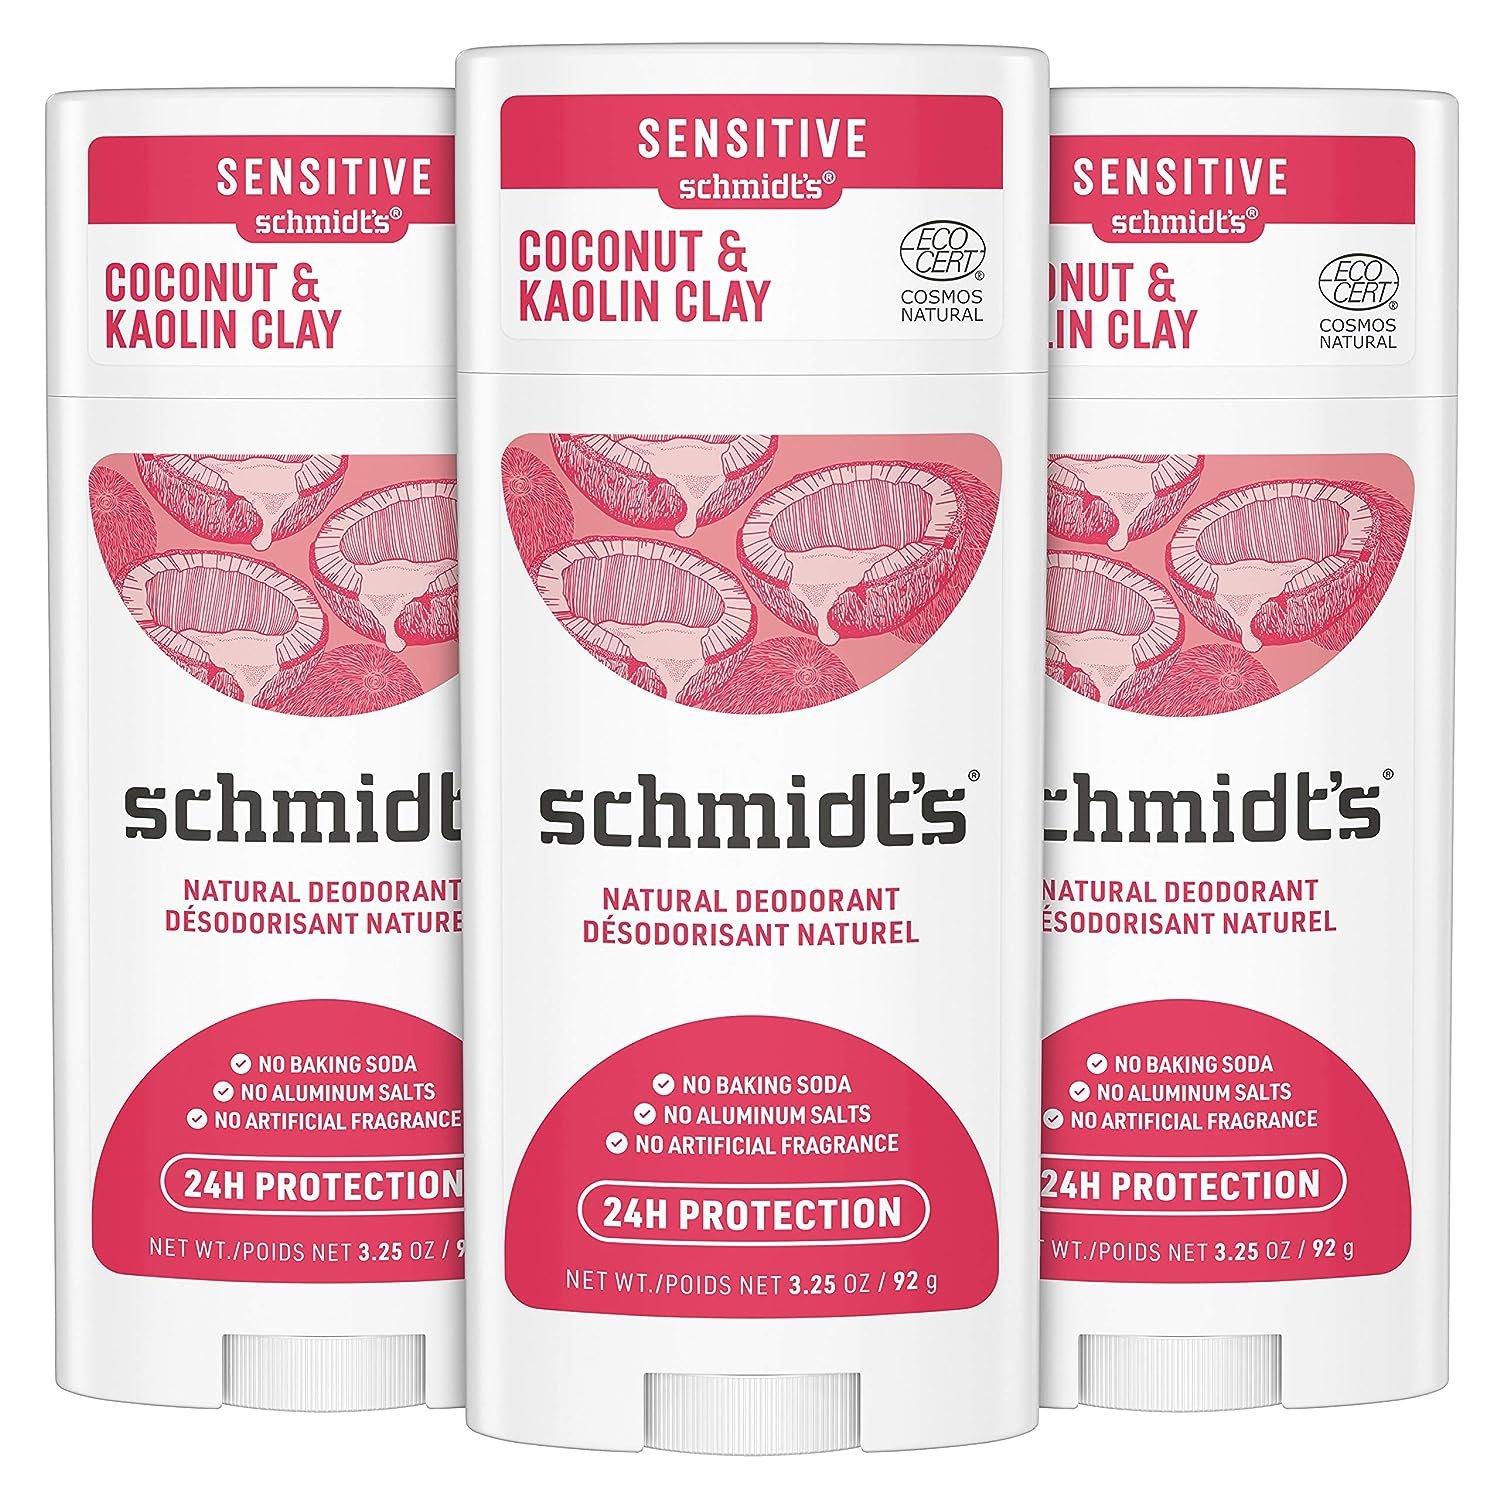 Dr. Schmidt's Sensitive Deodorant